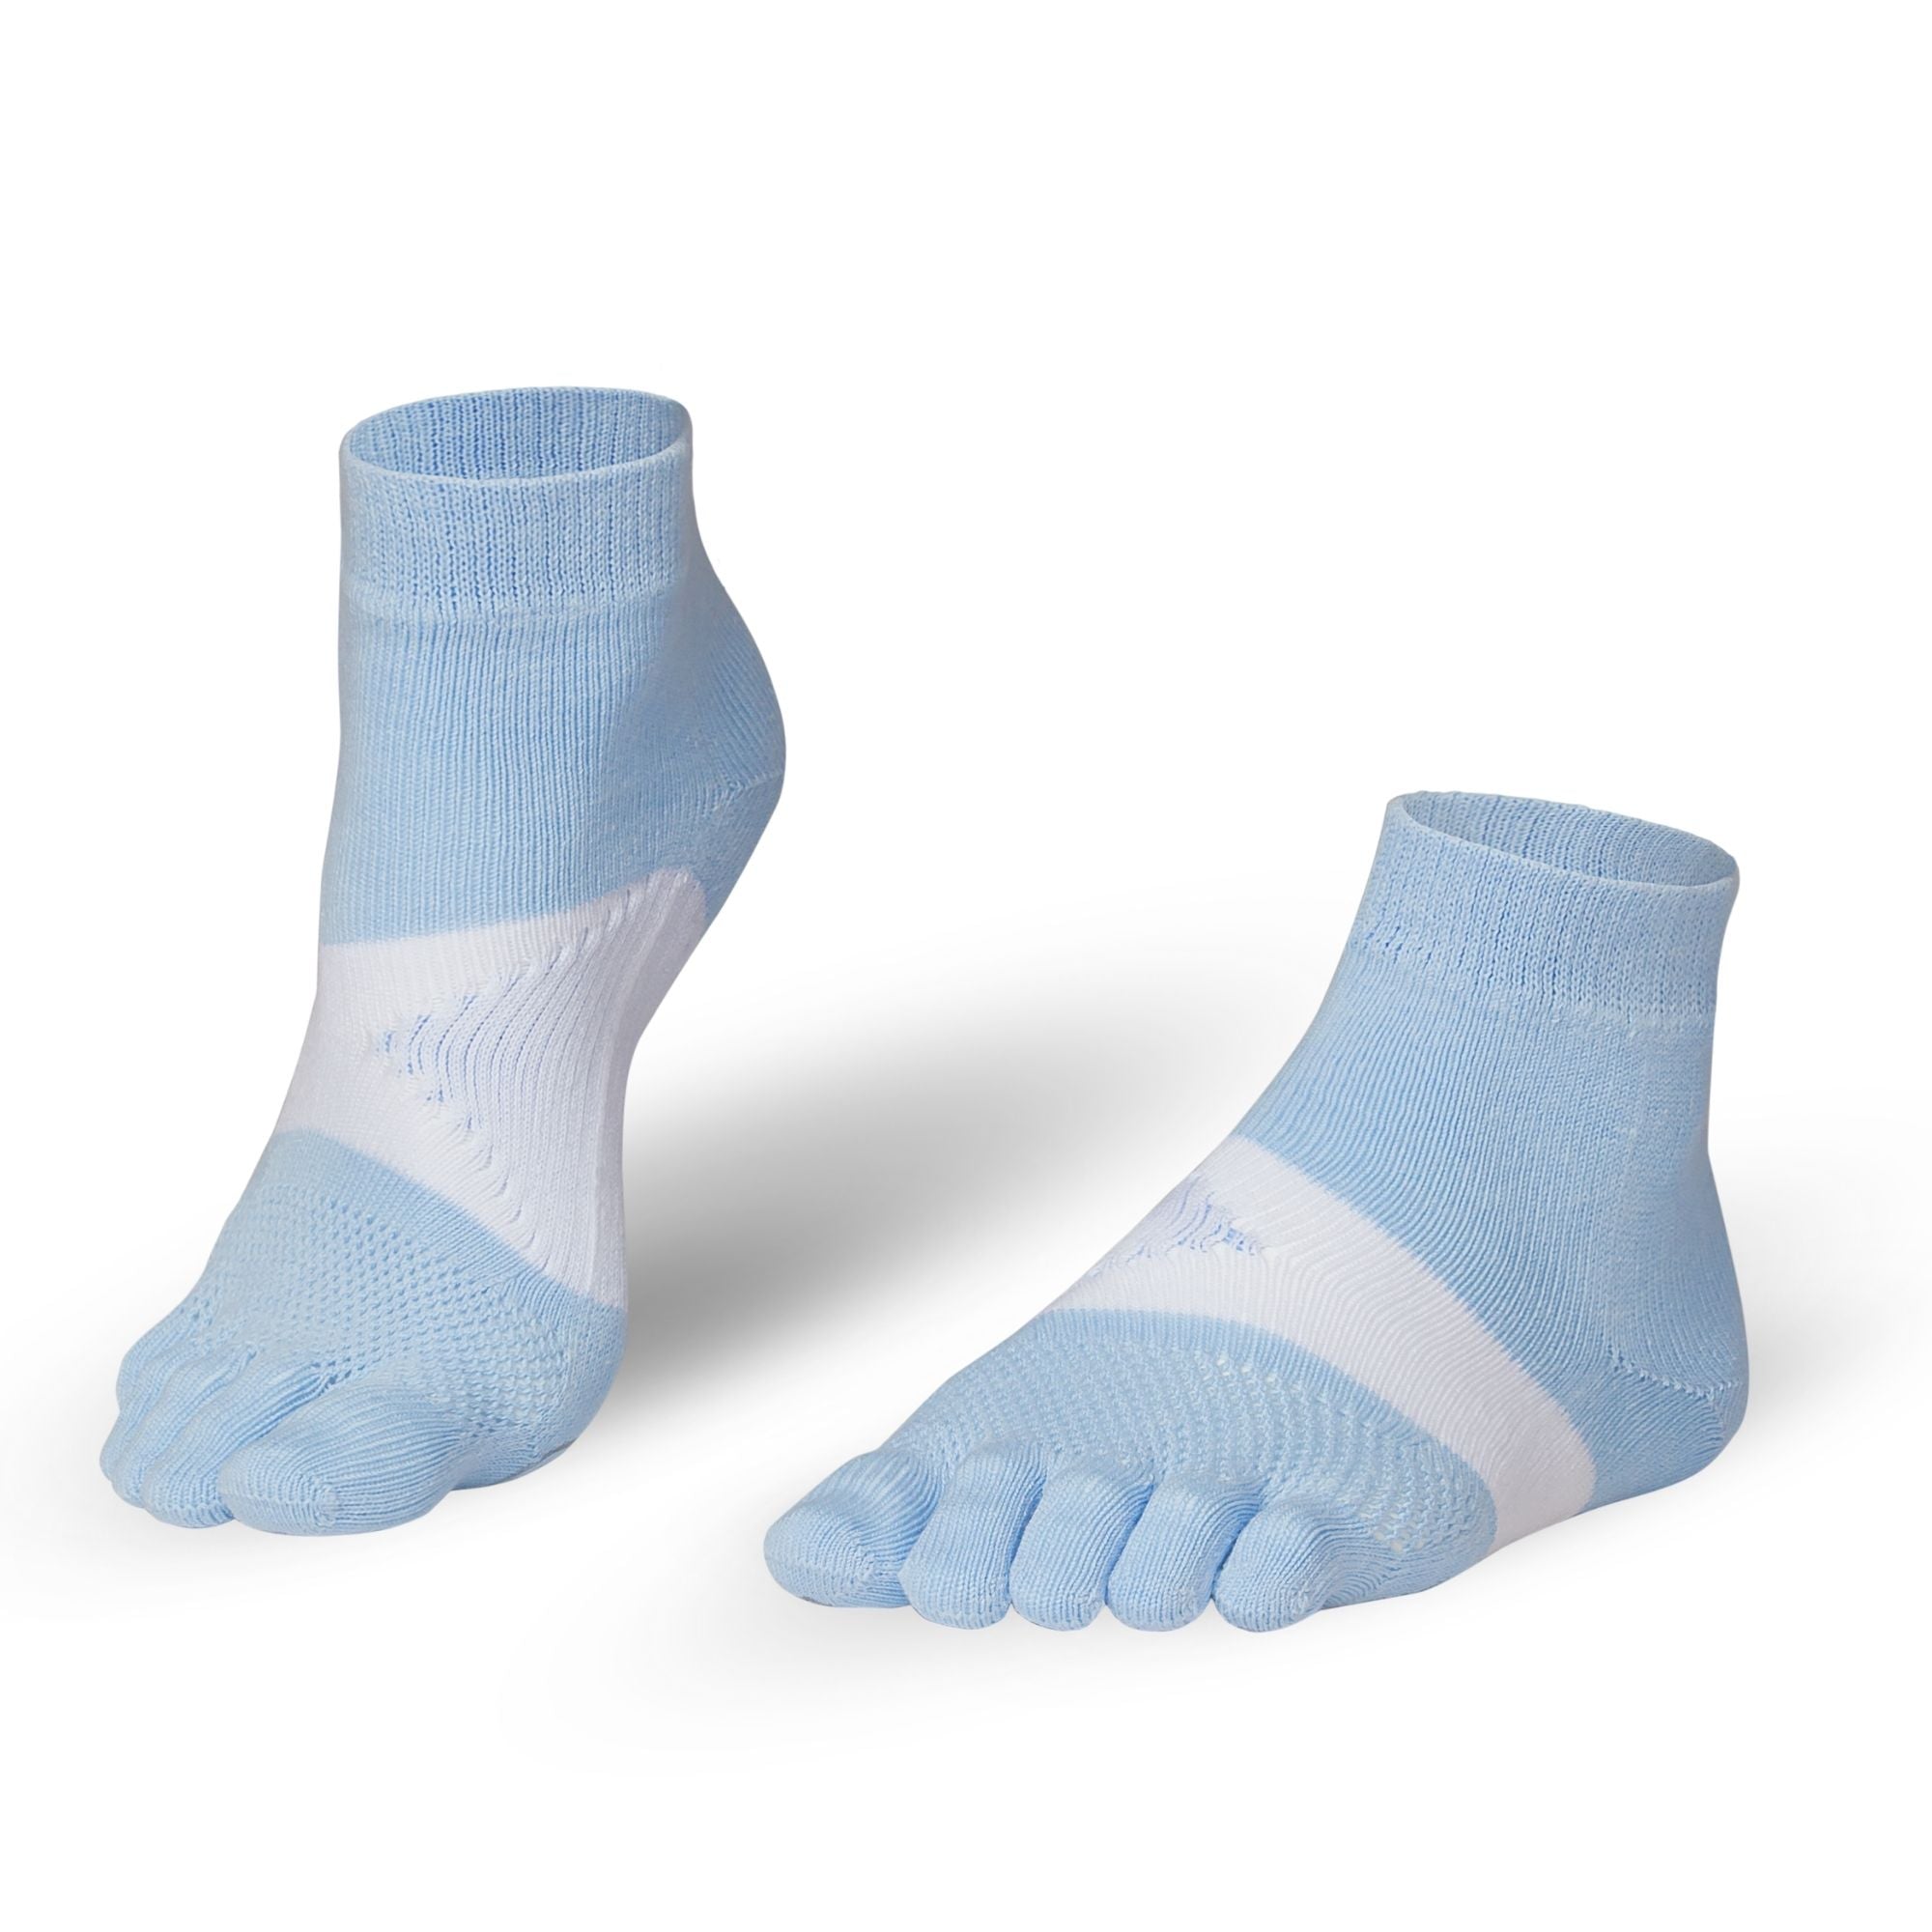 Knitido Marathon TS calze con dita in blu e bianco